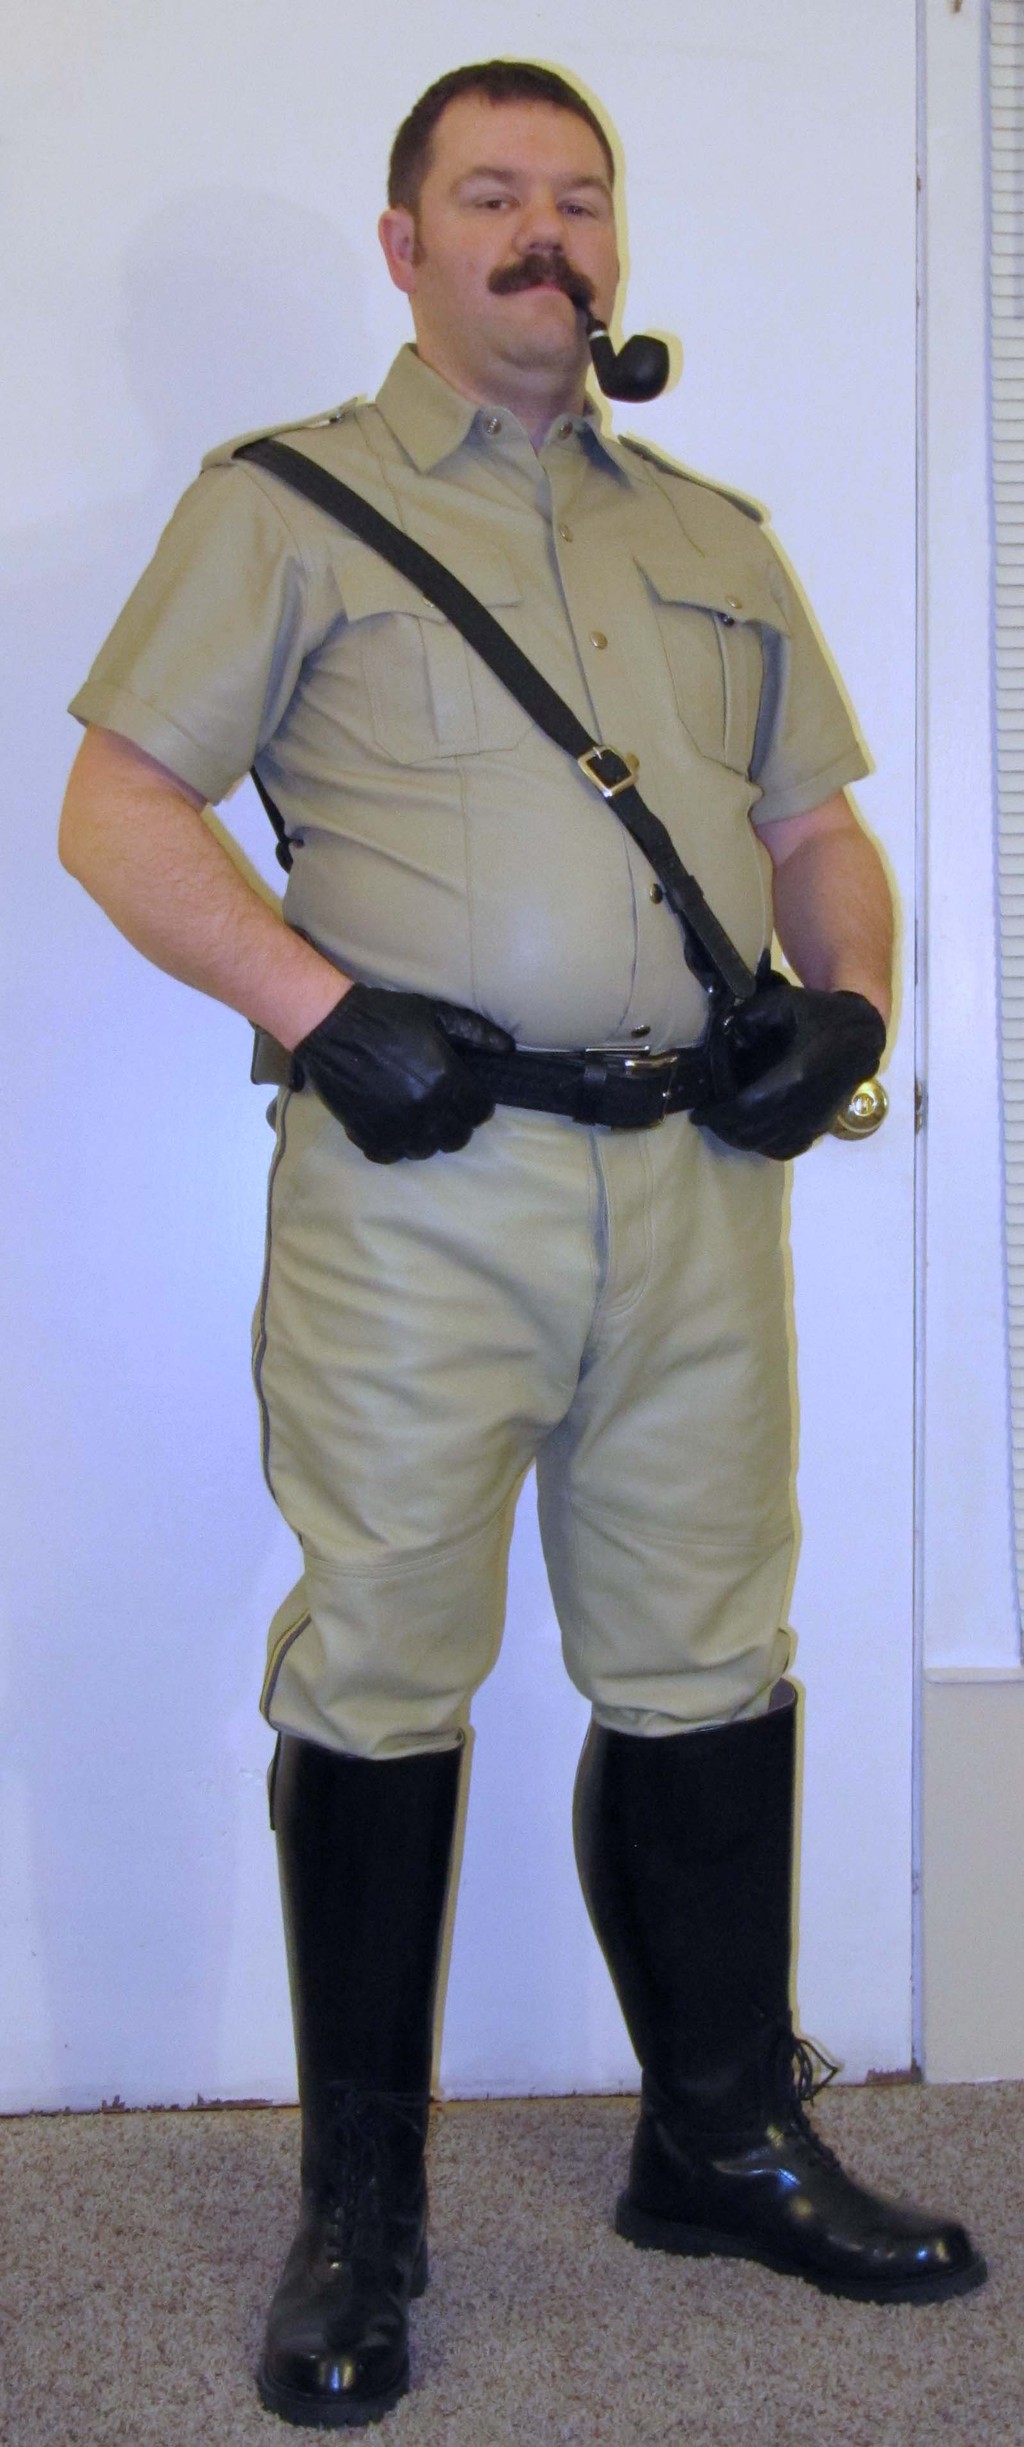 Officer Barnaby